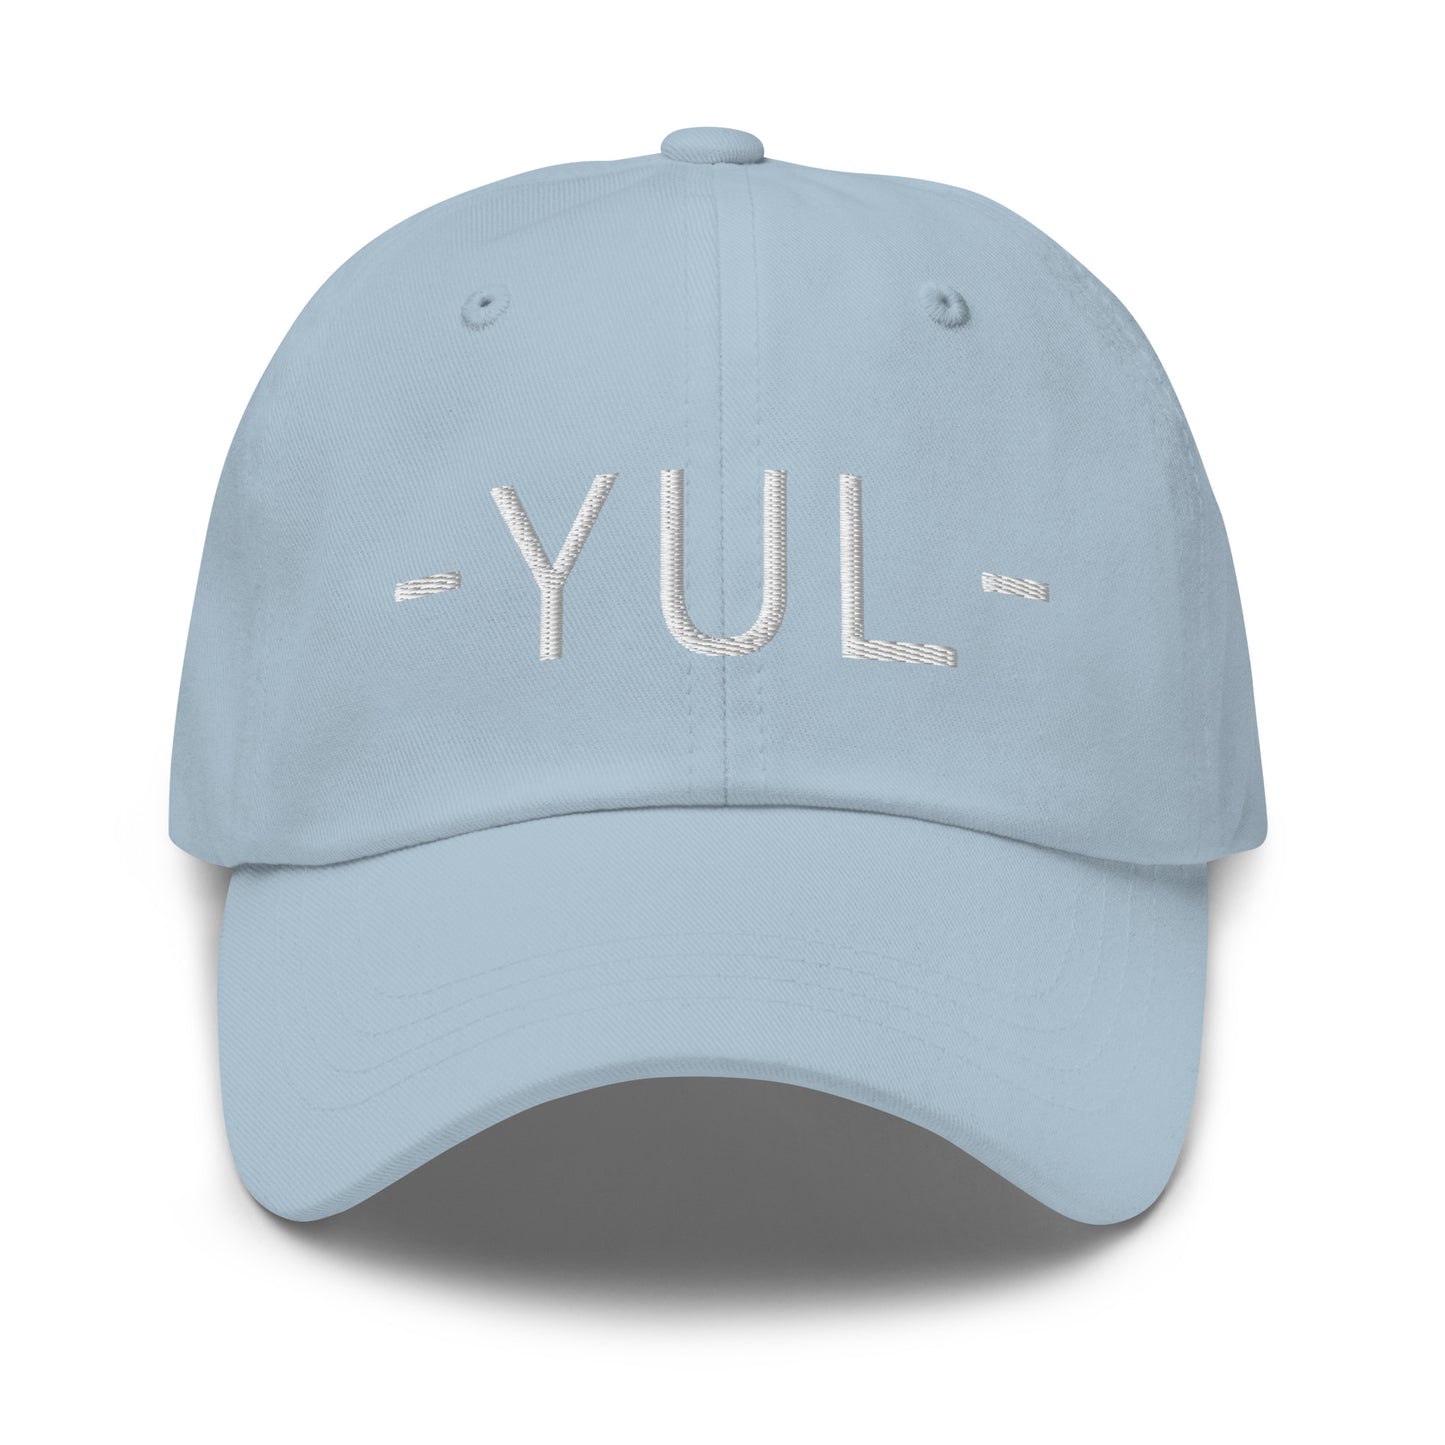 Souvenir Baseball Cap - White • YUL Montreal • YHM Designs - Image 27